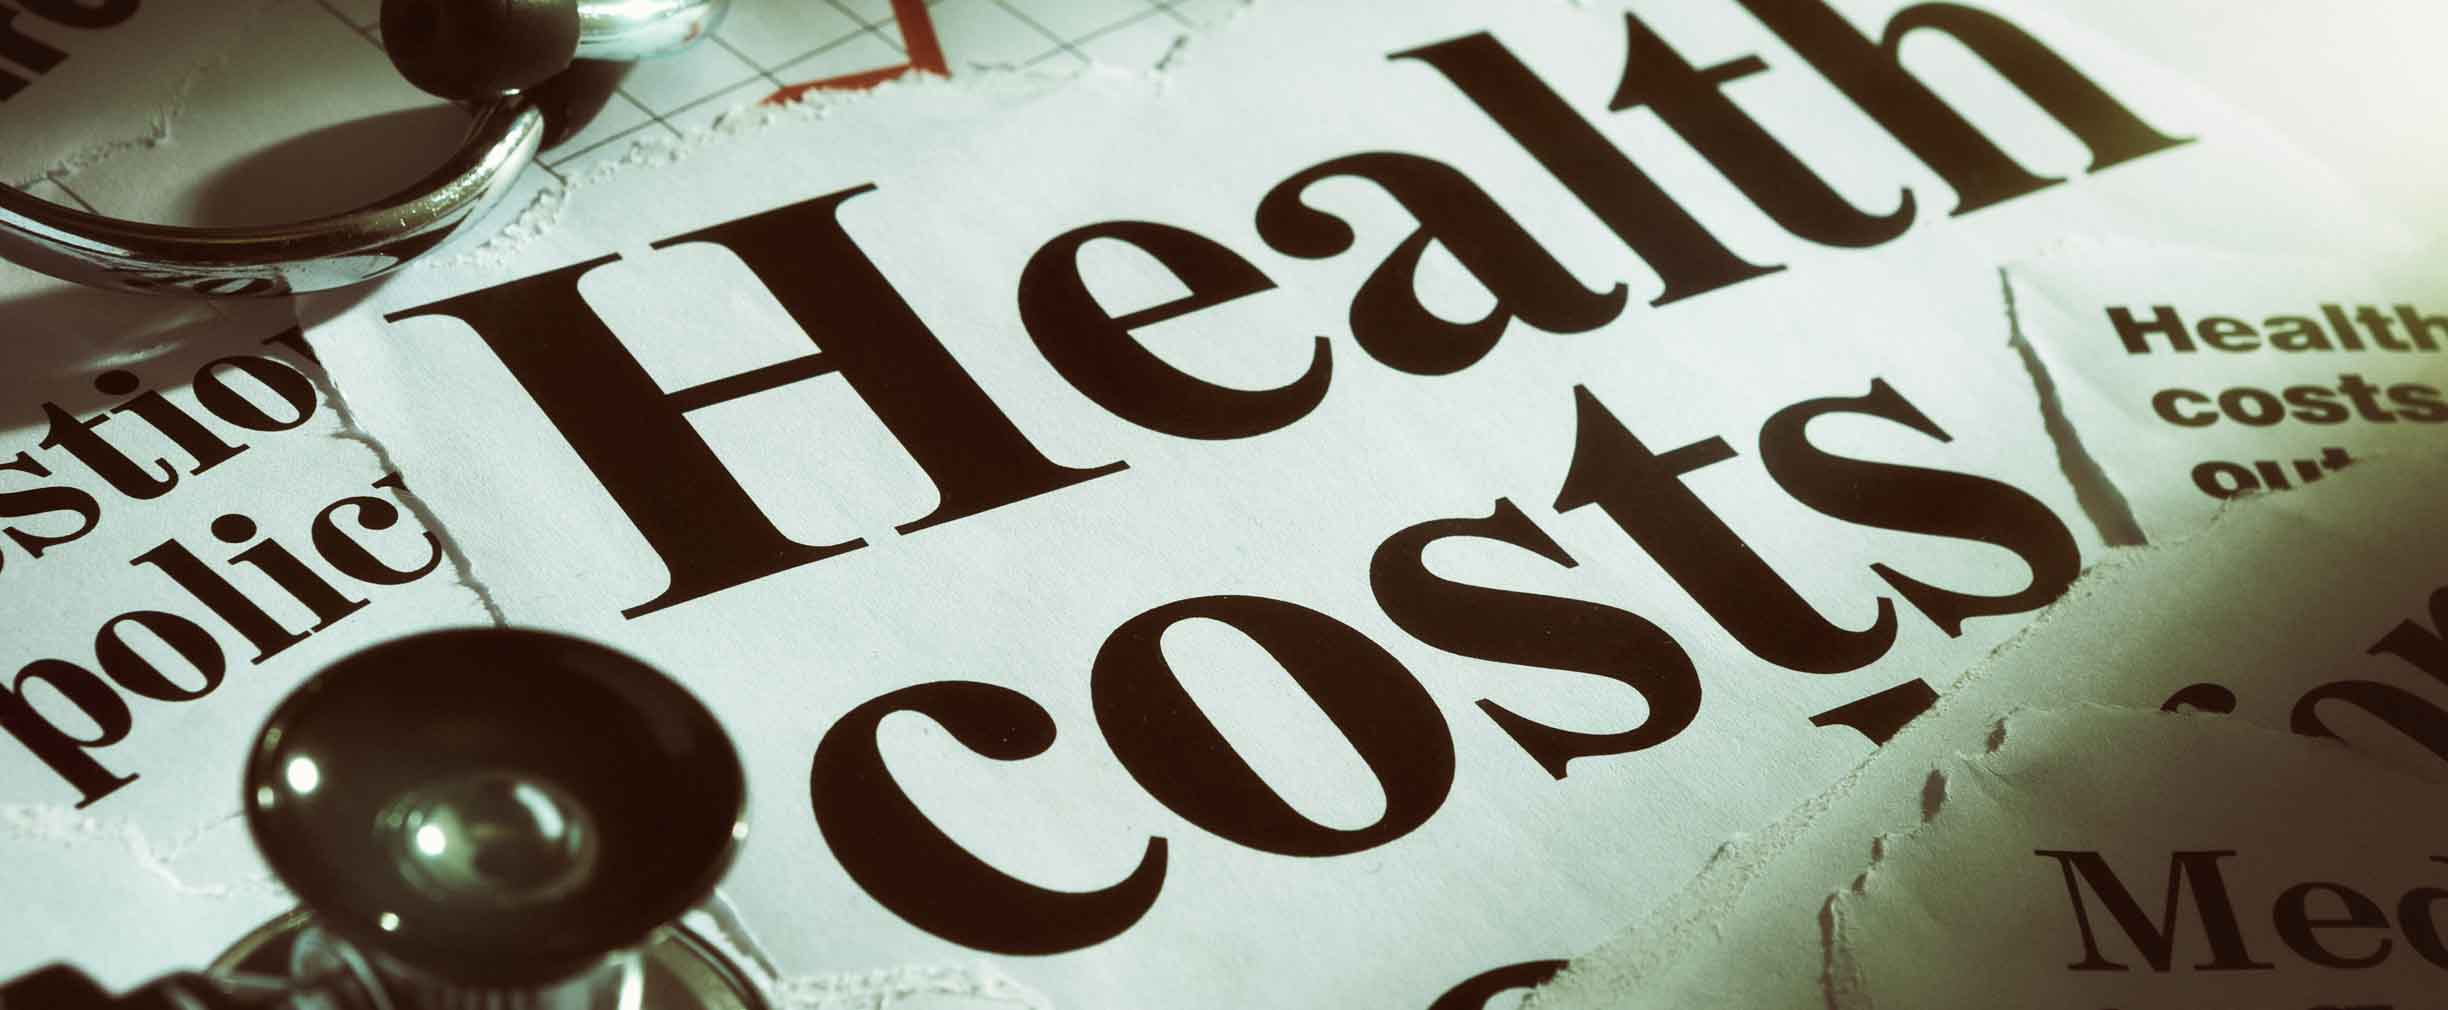 costos del seguro médico